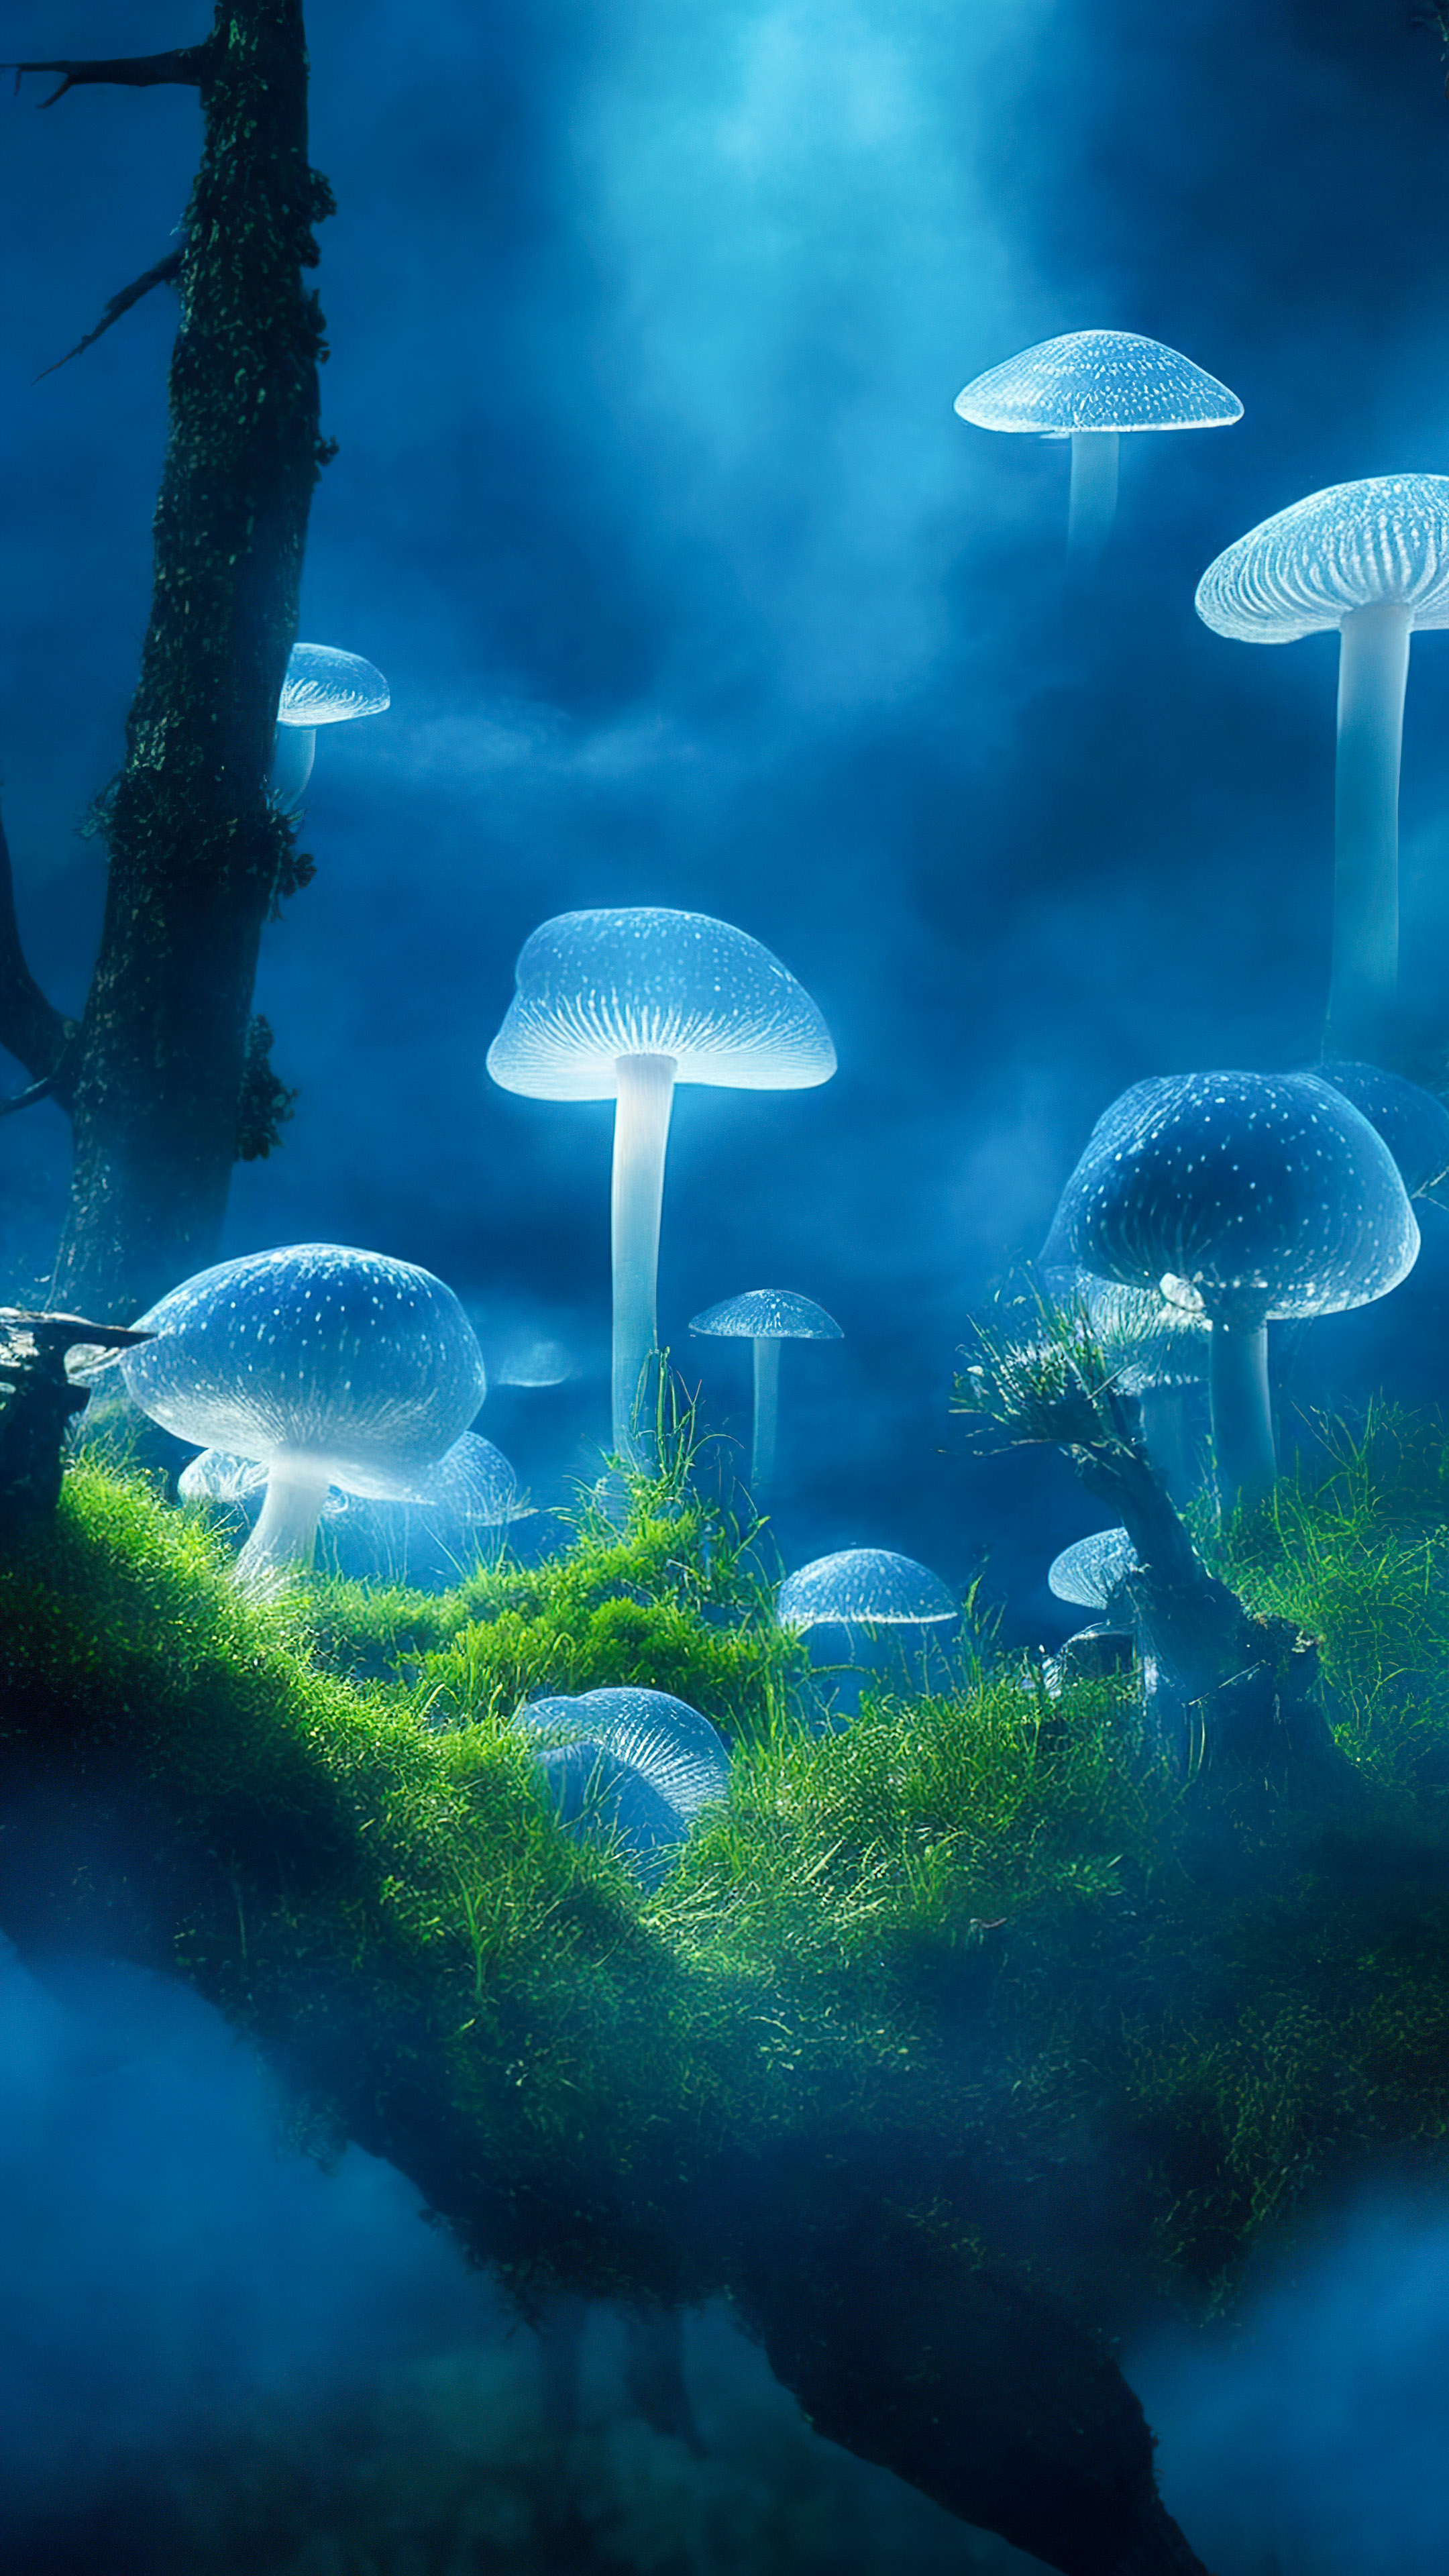 Perdez-vous dans la magie de nos jolis arrière-plans de nature, révélant une clairière mystique avec des champignons bioluminescents, créant une scène enchanteresse et surnaturelle. 